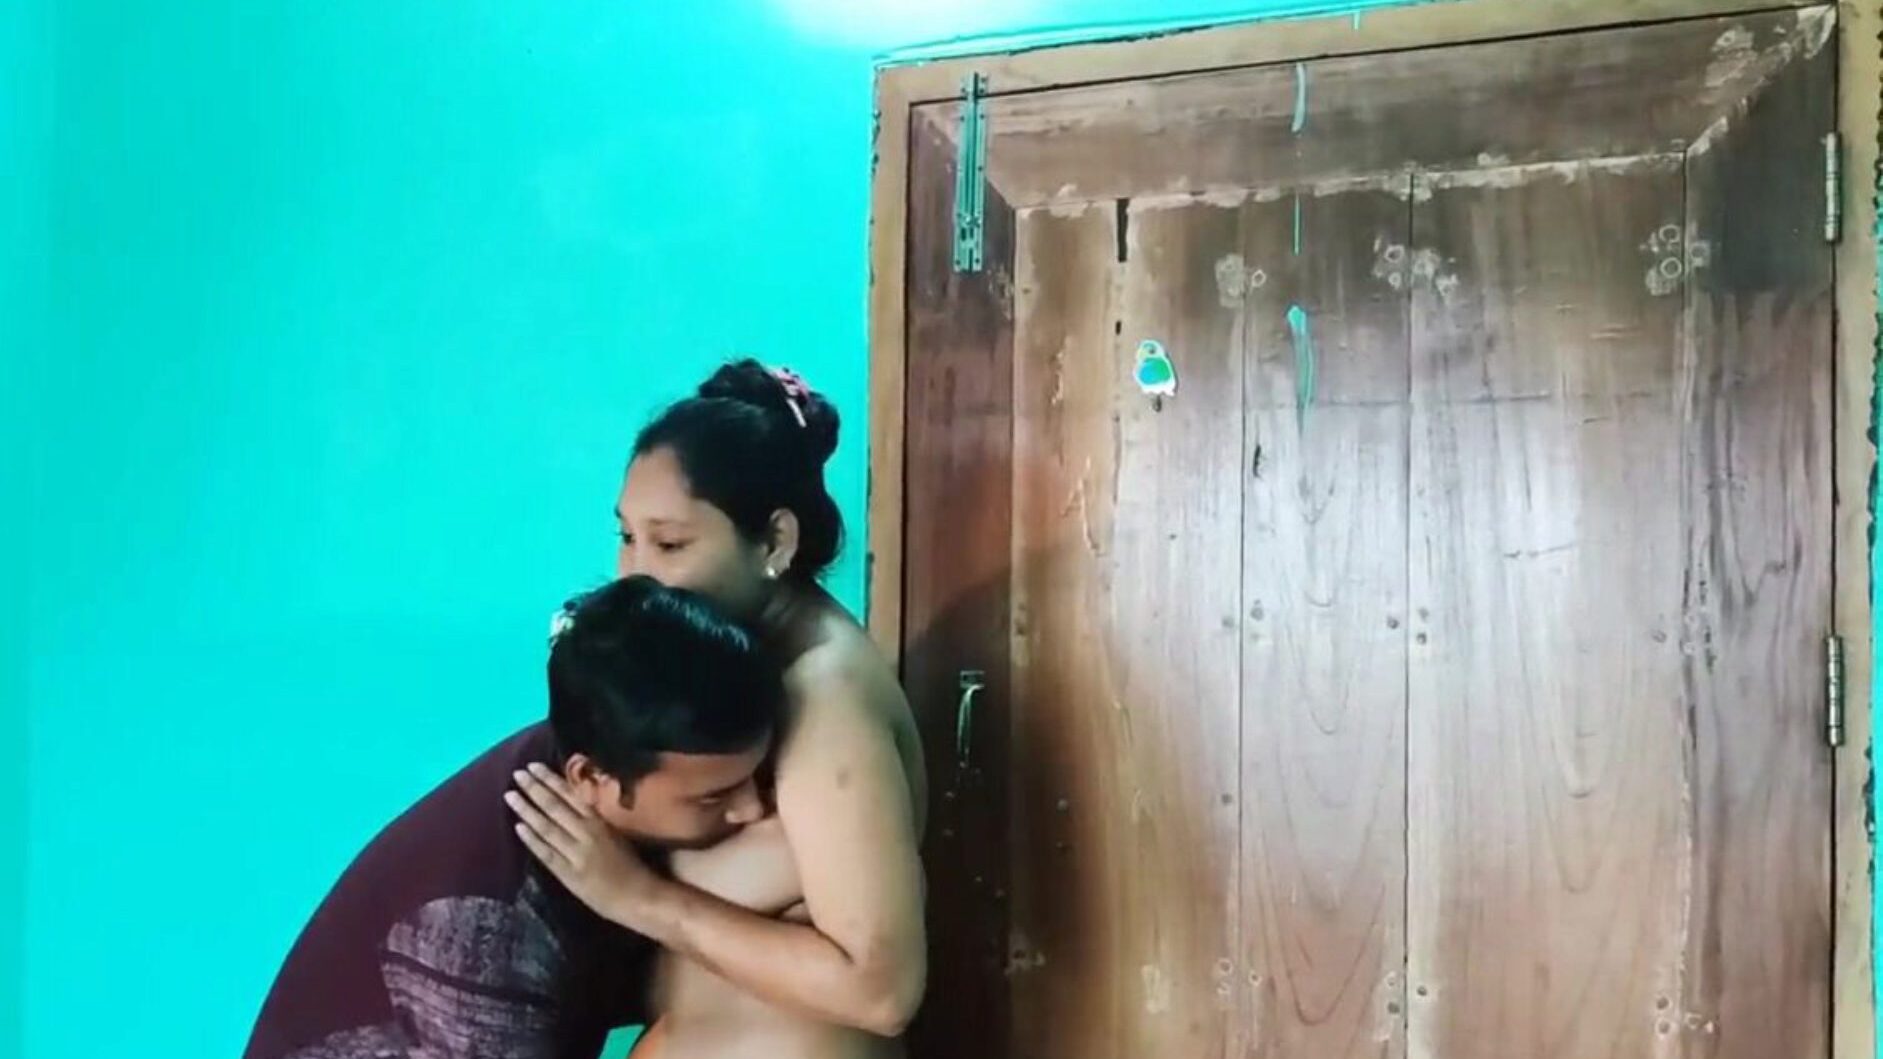 desi bengali vidéo de sexe nue, porno asiatique gratuit 6c: xhamster regarder desi bengali vidéo de sexe épisode nu sur xhamster, la plus grosse ressource Web de tube hd fuck-fest avec des tonnes de vidéos de sexe xxn asiatique gratuit et de pornographie anale